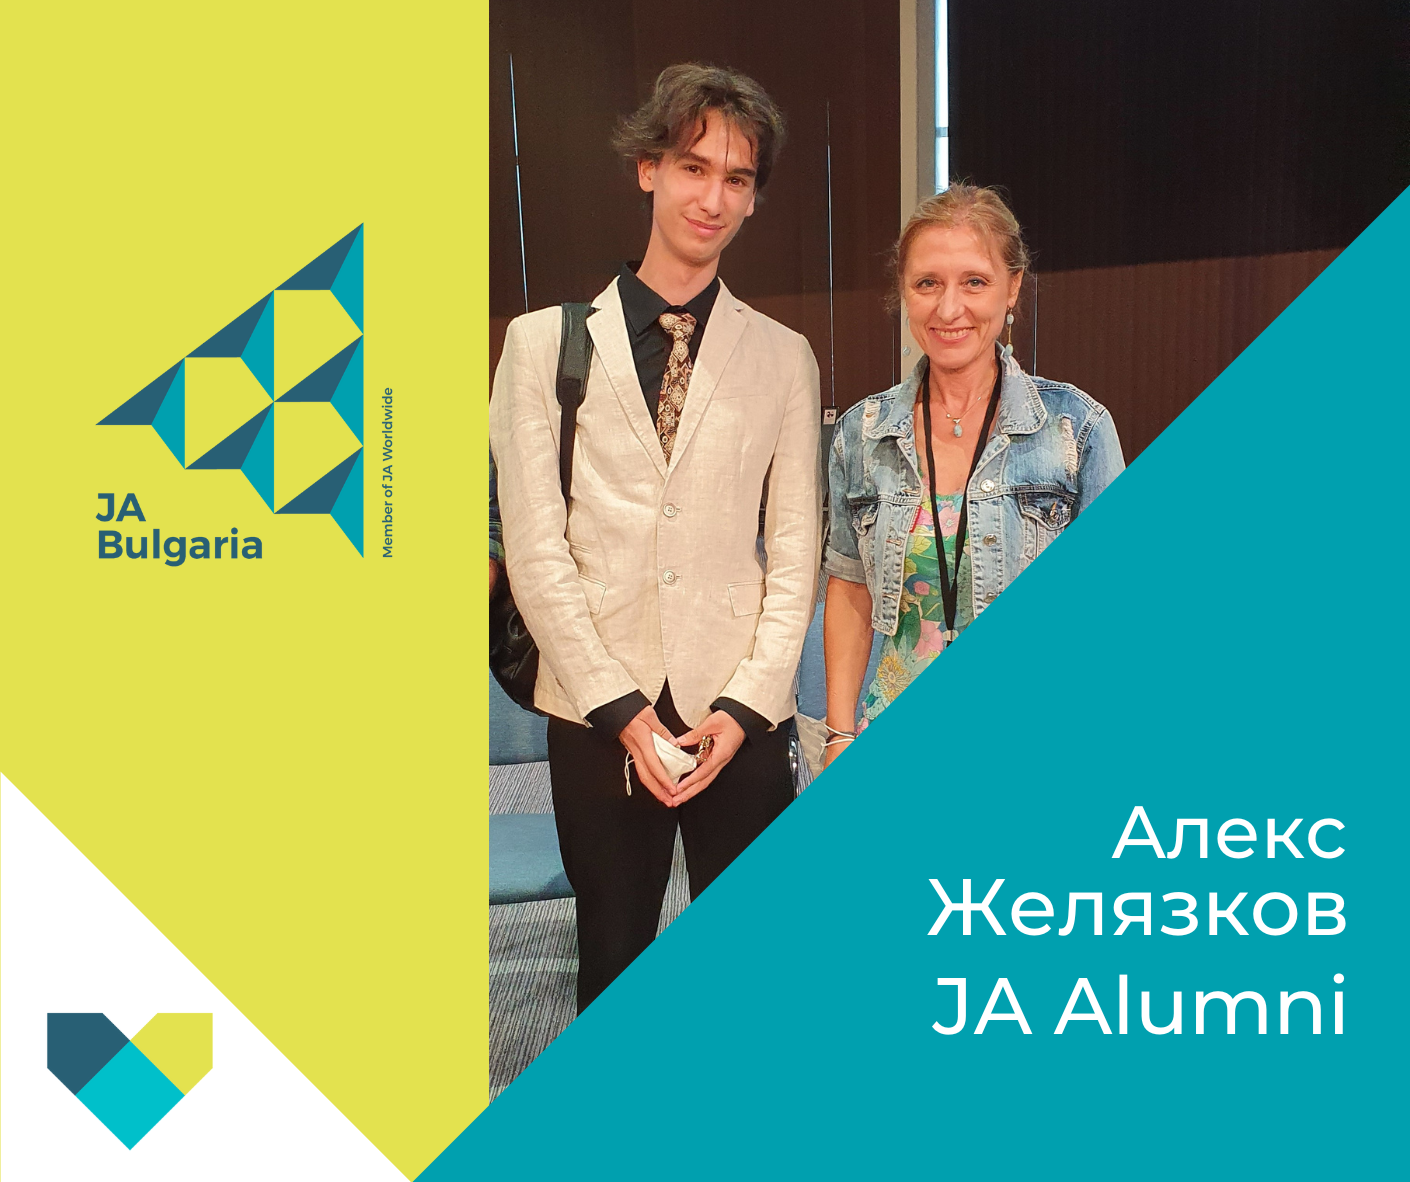 Алекс Желязков: Участието в програмите на JA Bulgaria ми помогна да развия себе си